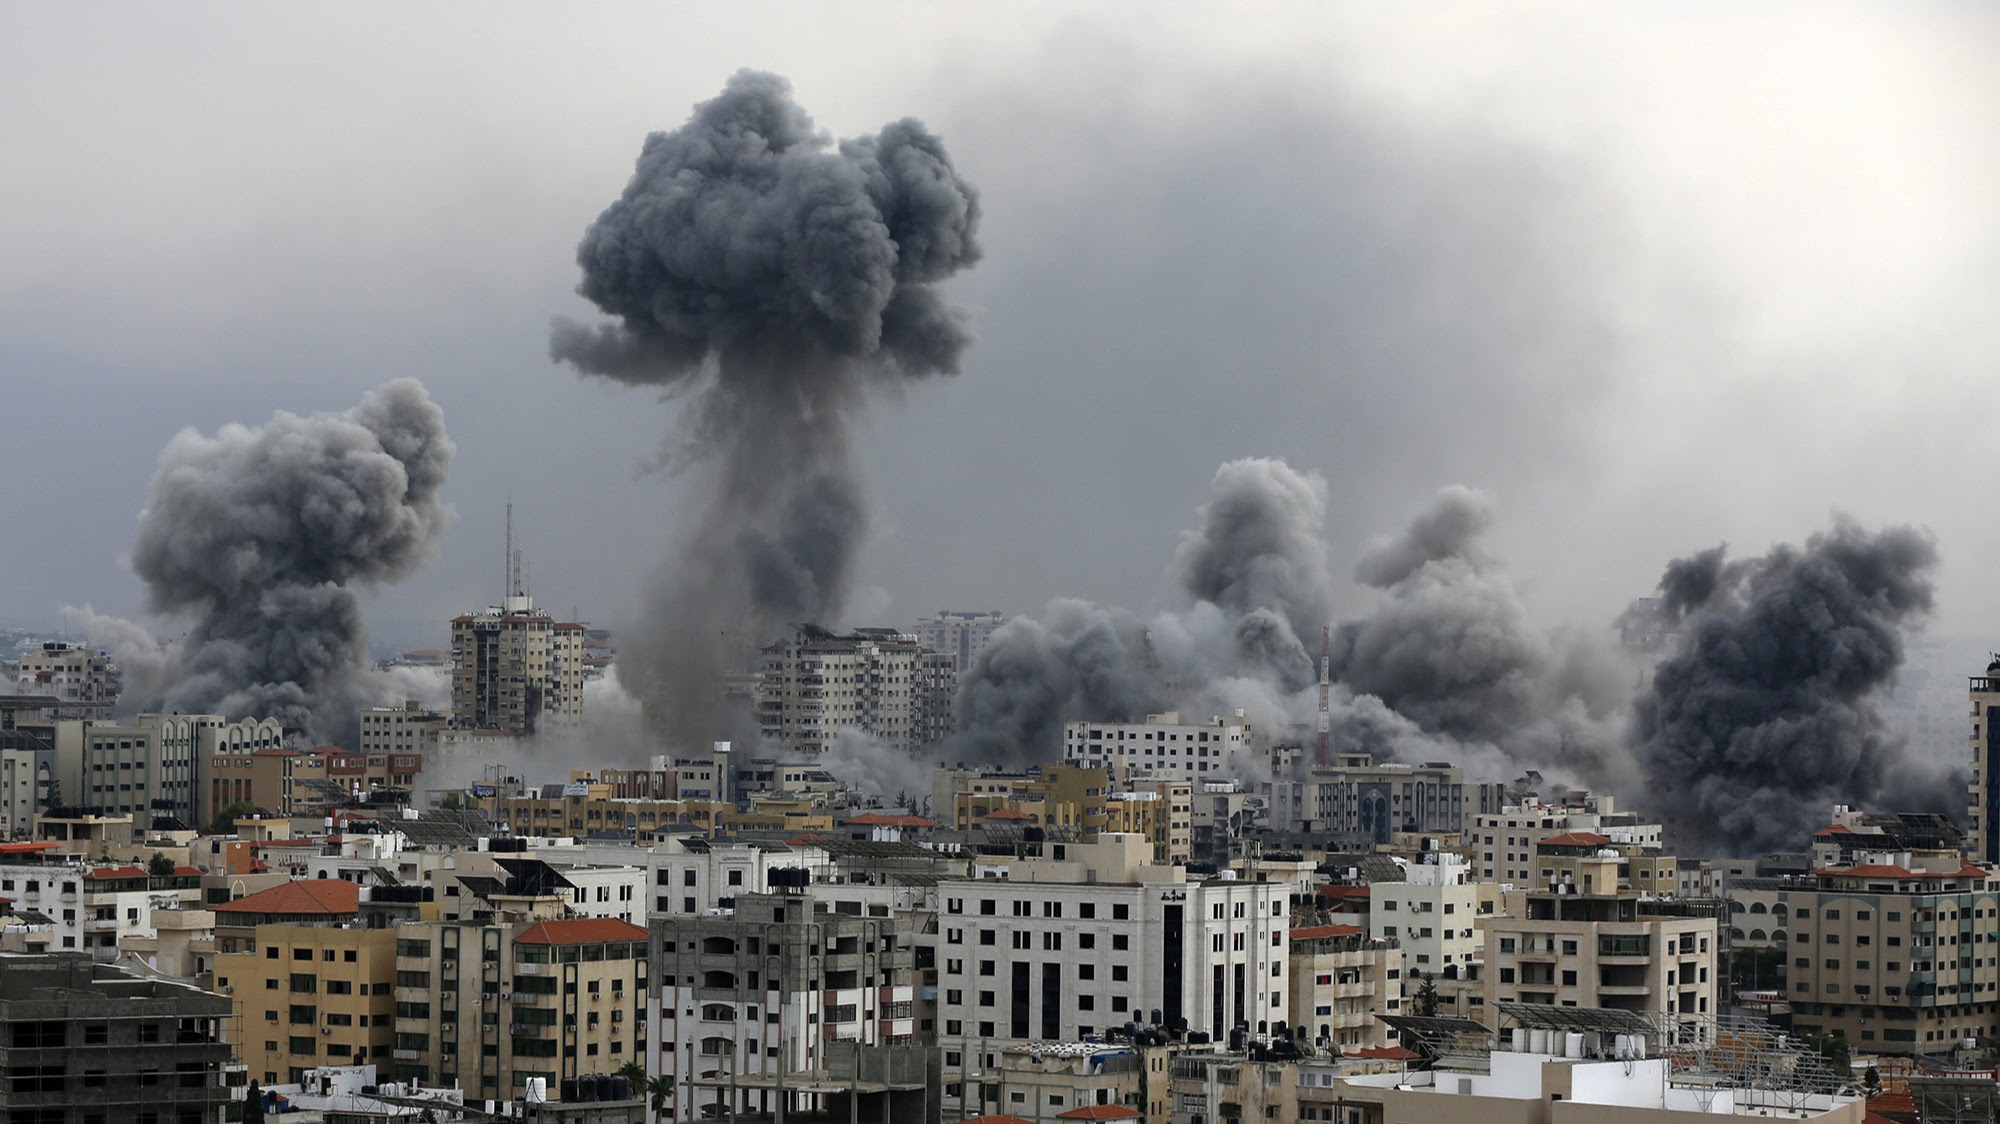 Як Ізраіль выкарыстоўвае сістэму штучнага інтэлекту “Евангелле” падчас бамбардзіровак Газы